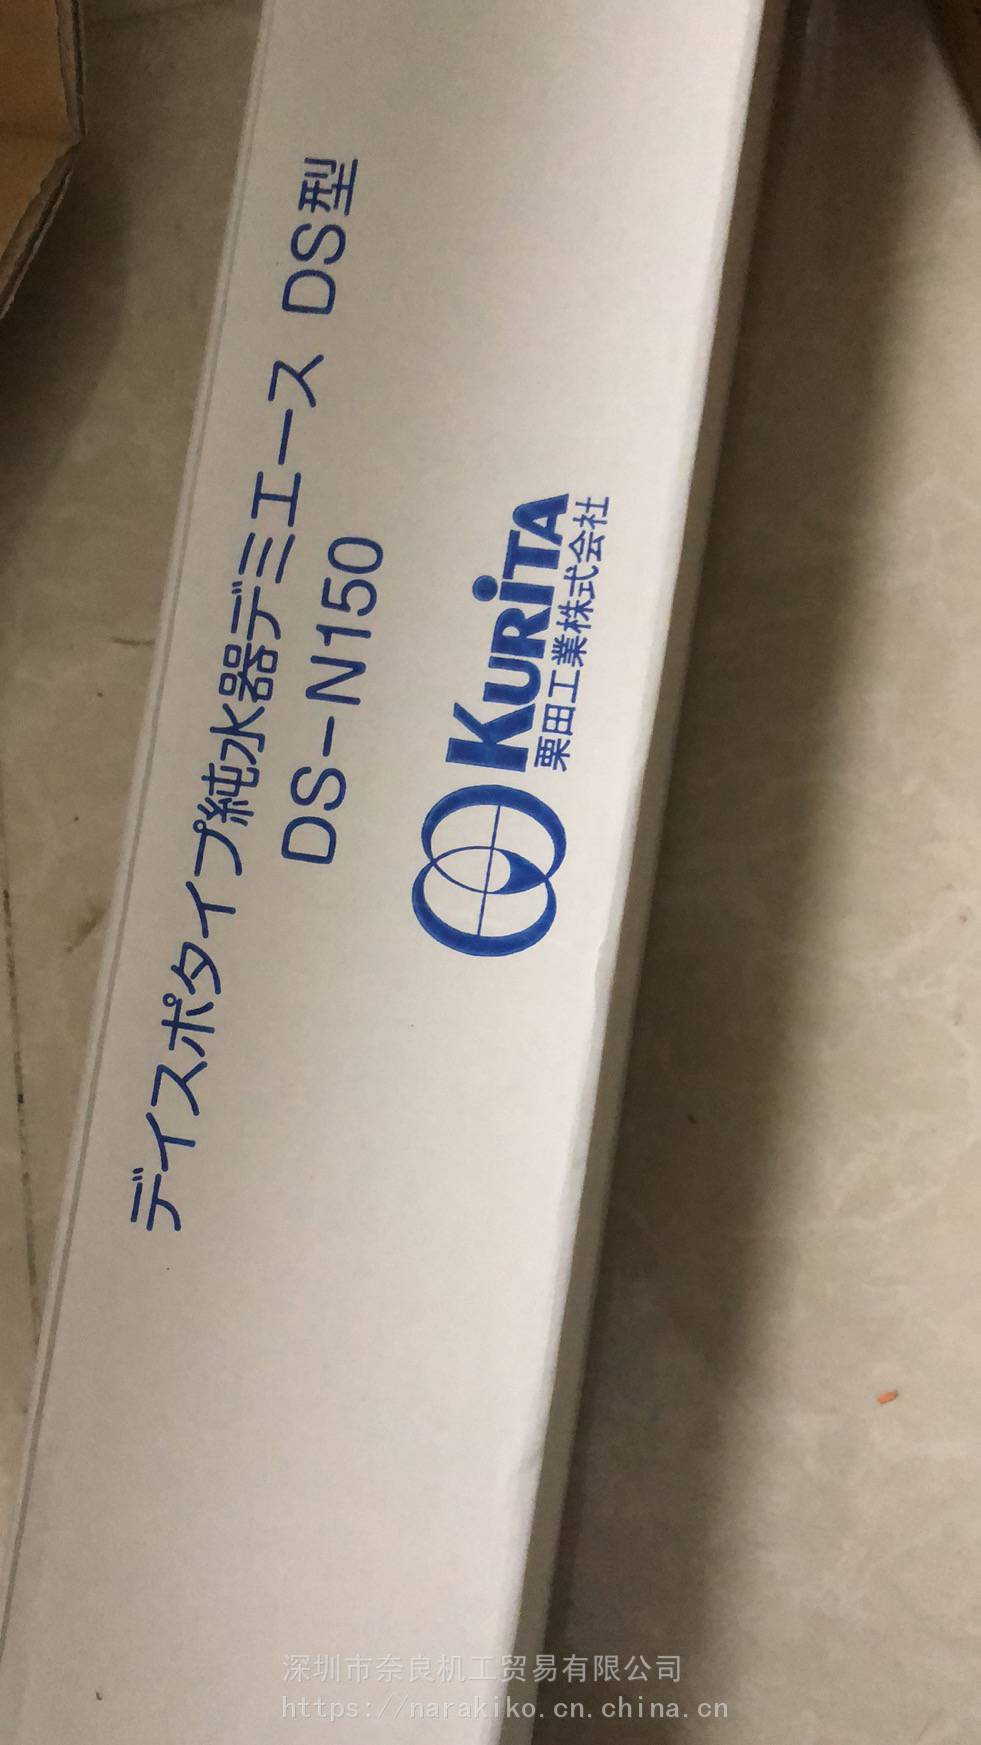 栗田工業 デミエース DS-N150 通販